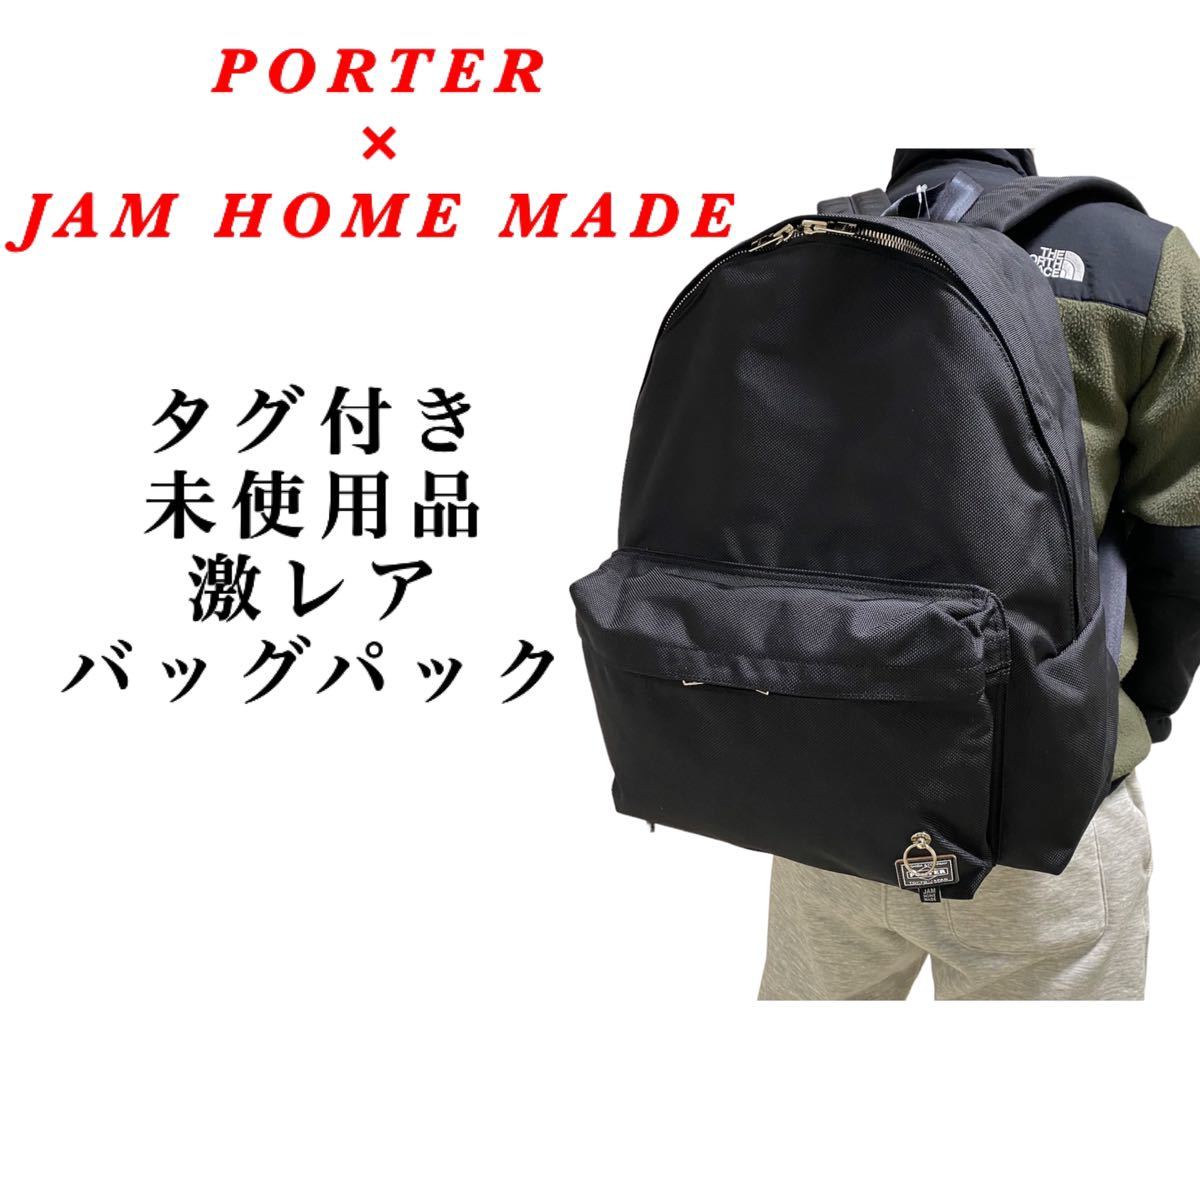 美品】JAM HOME MADE × PORTER スタッズバックパック 希少 ghslimited.net